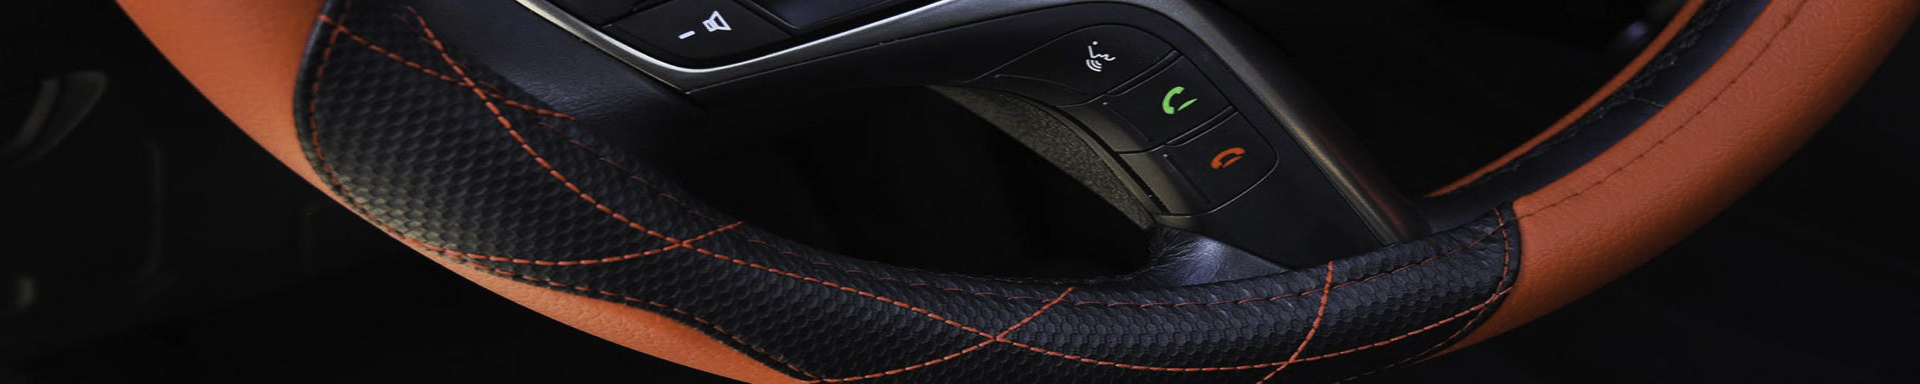 Steering Wheel Covers | GarageAndFab.com | Munro Industries gf-100103051111